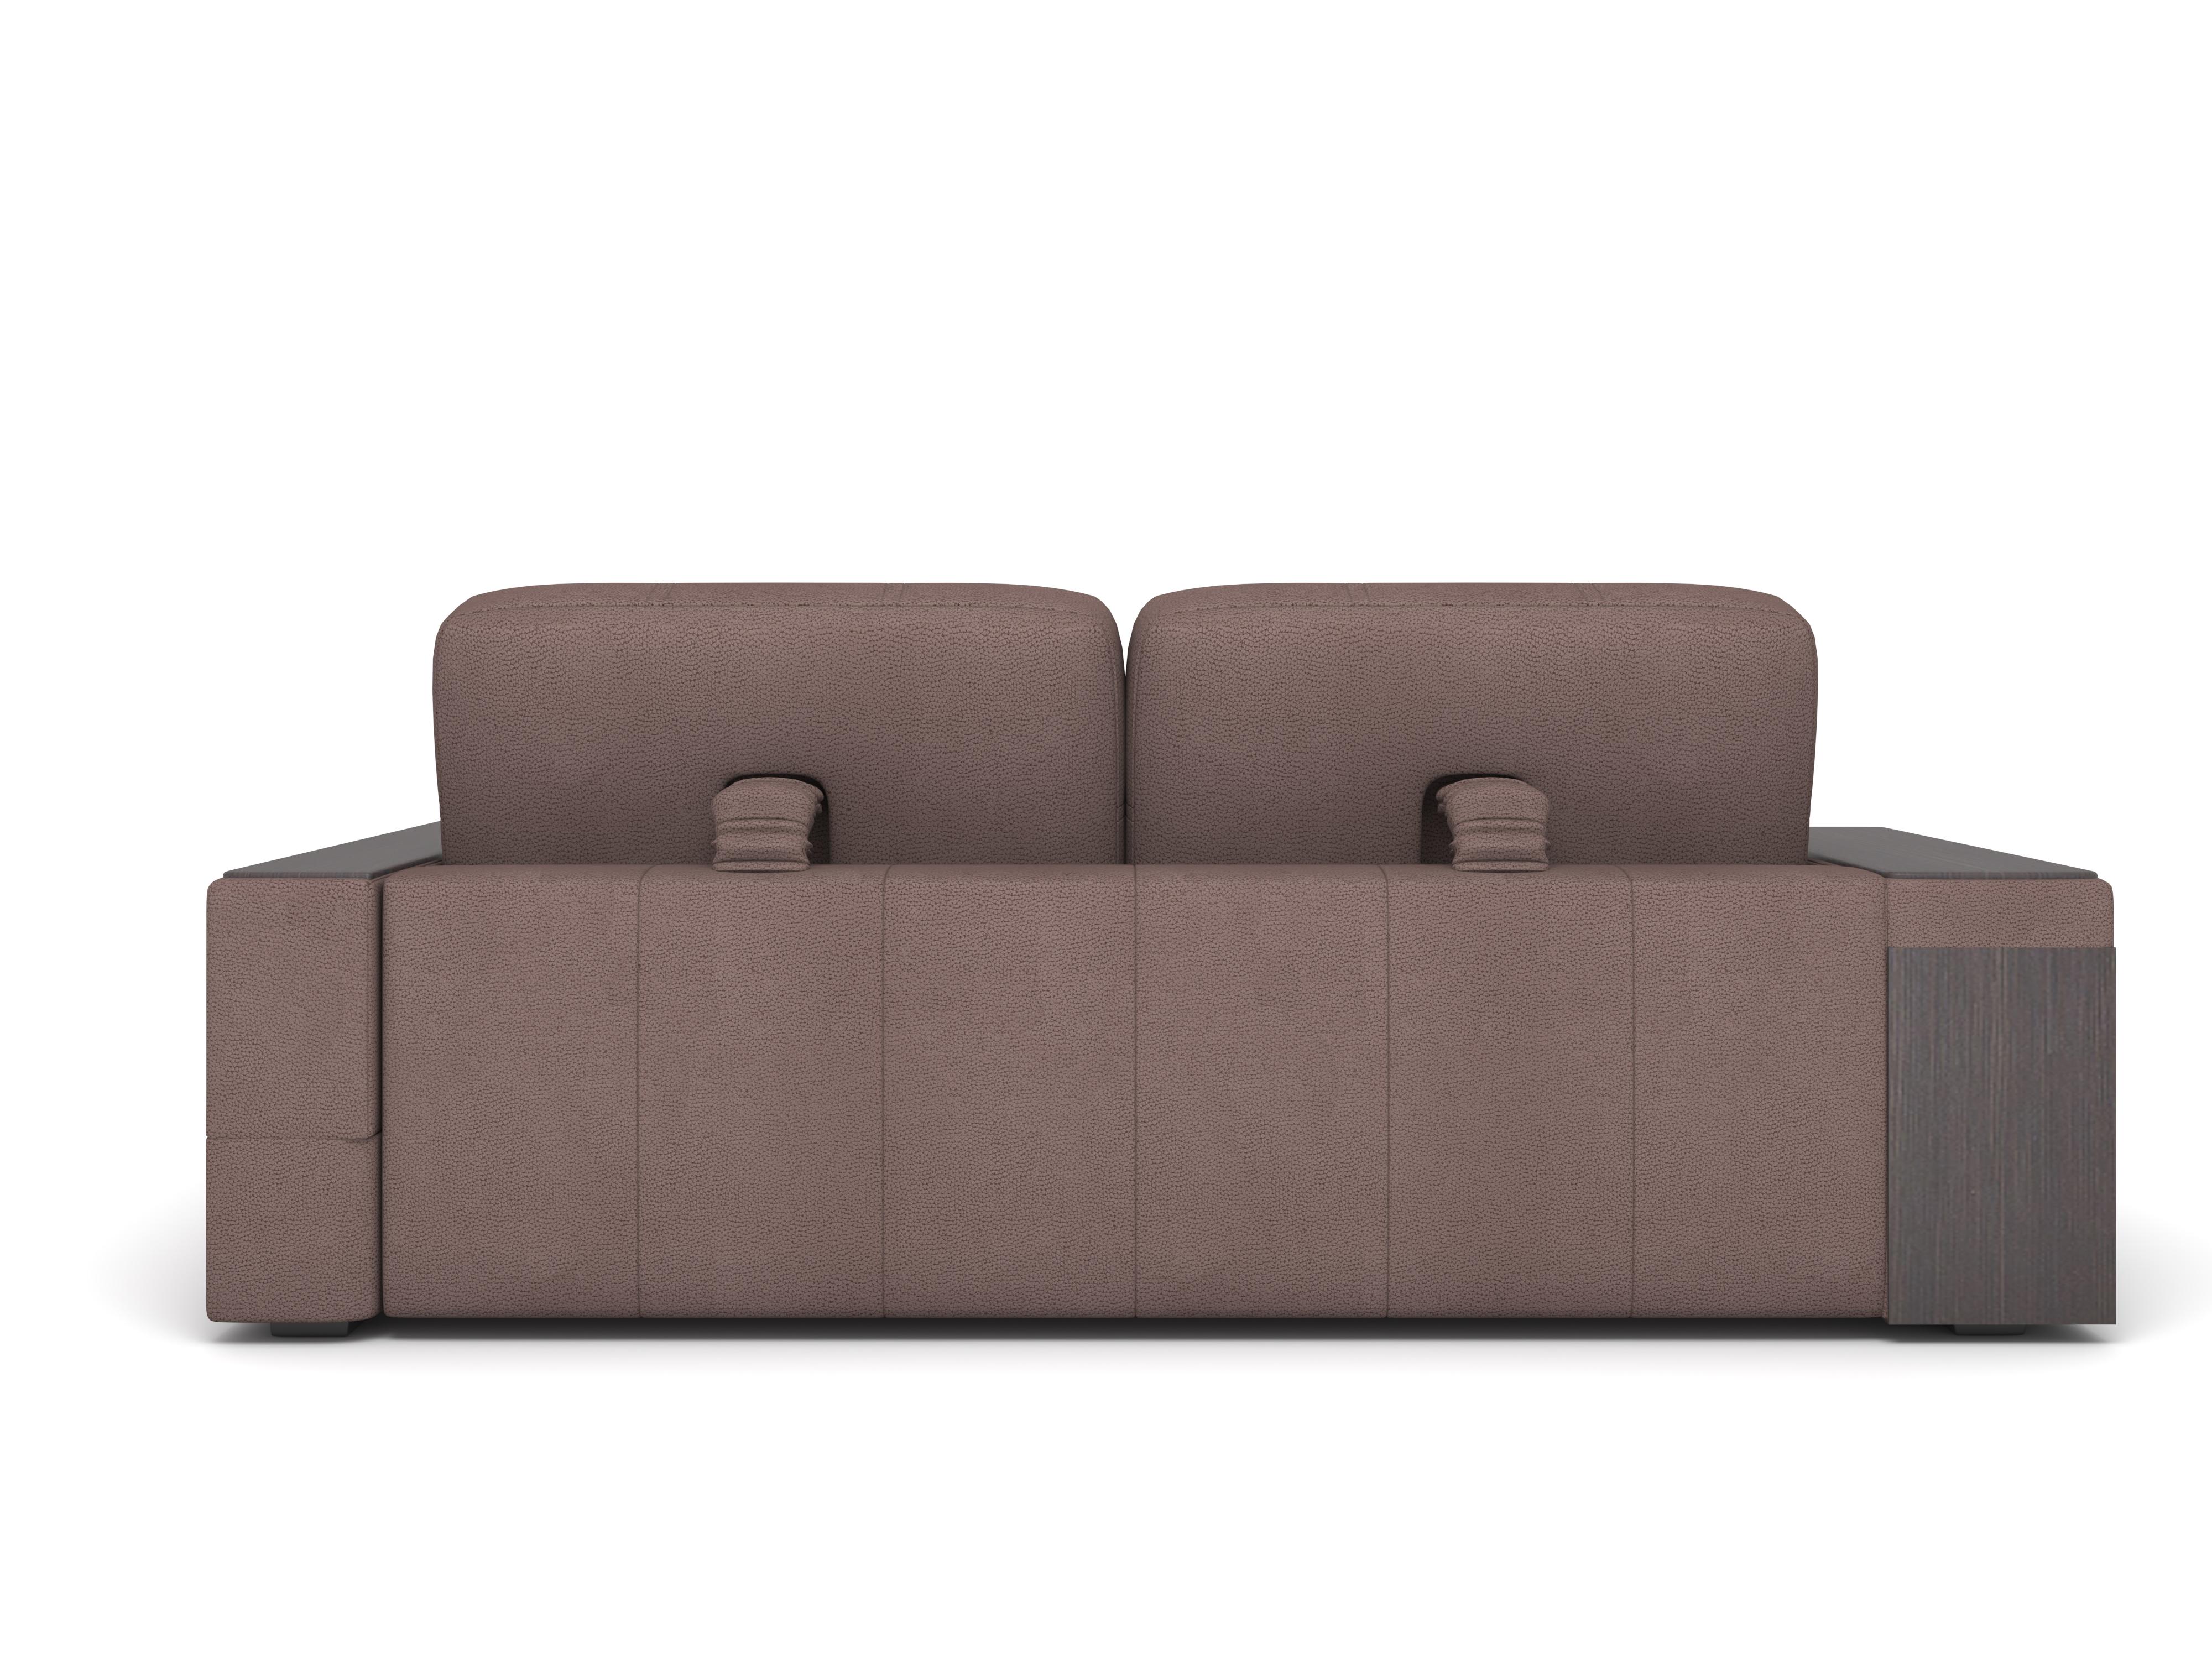 Фото №8 Берлин, угловой диван с широким подлокотником Verona dark brown 744 (K)